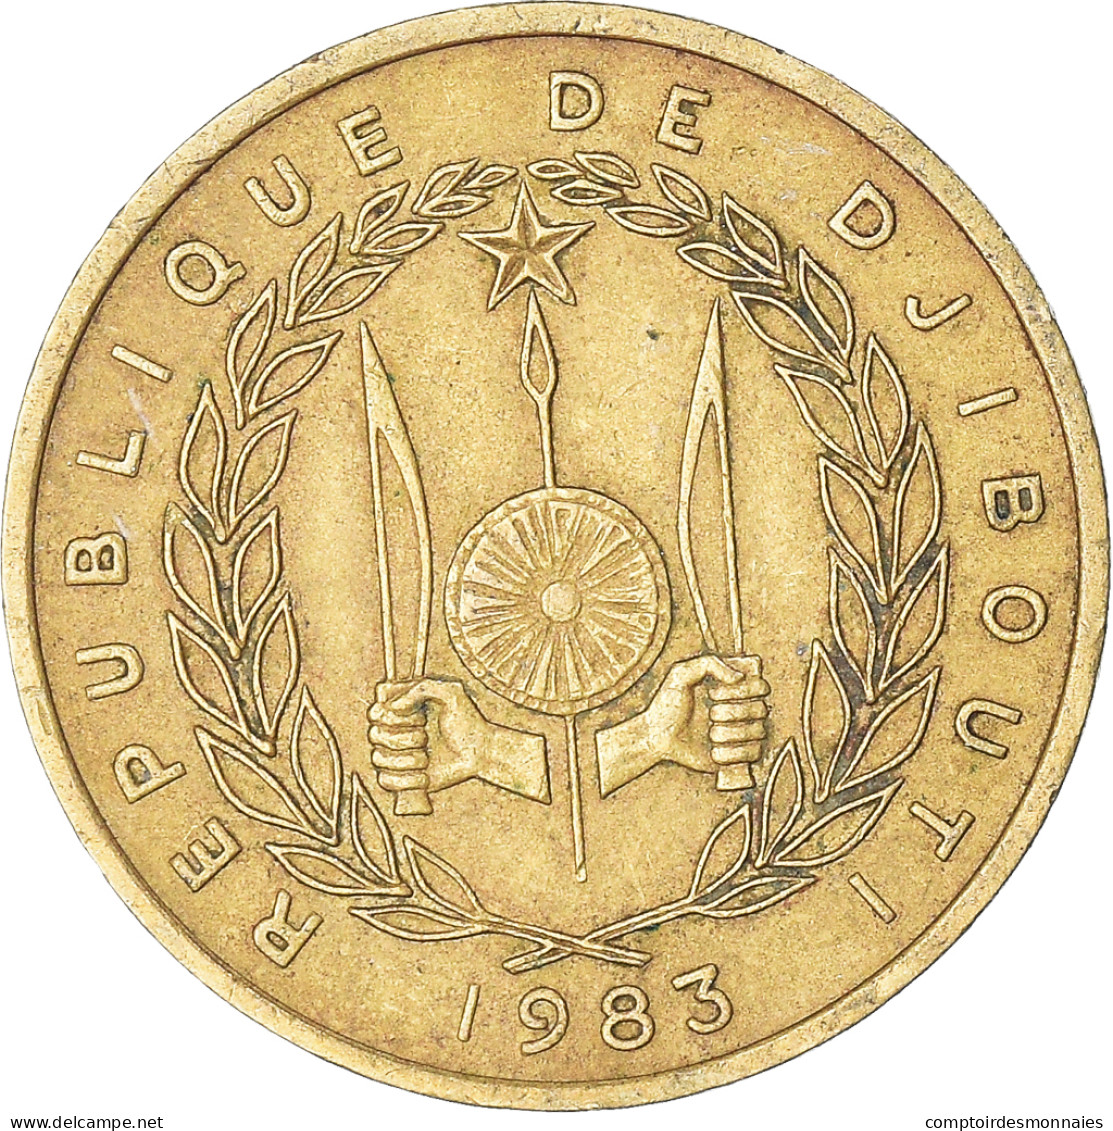 Monnaie, Djibouti, 10 Francs, 1983 - Dschibuti